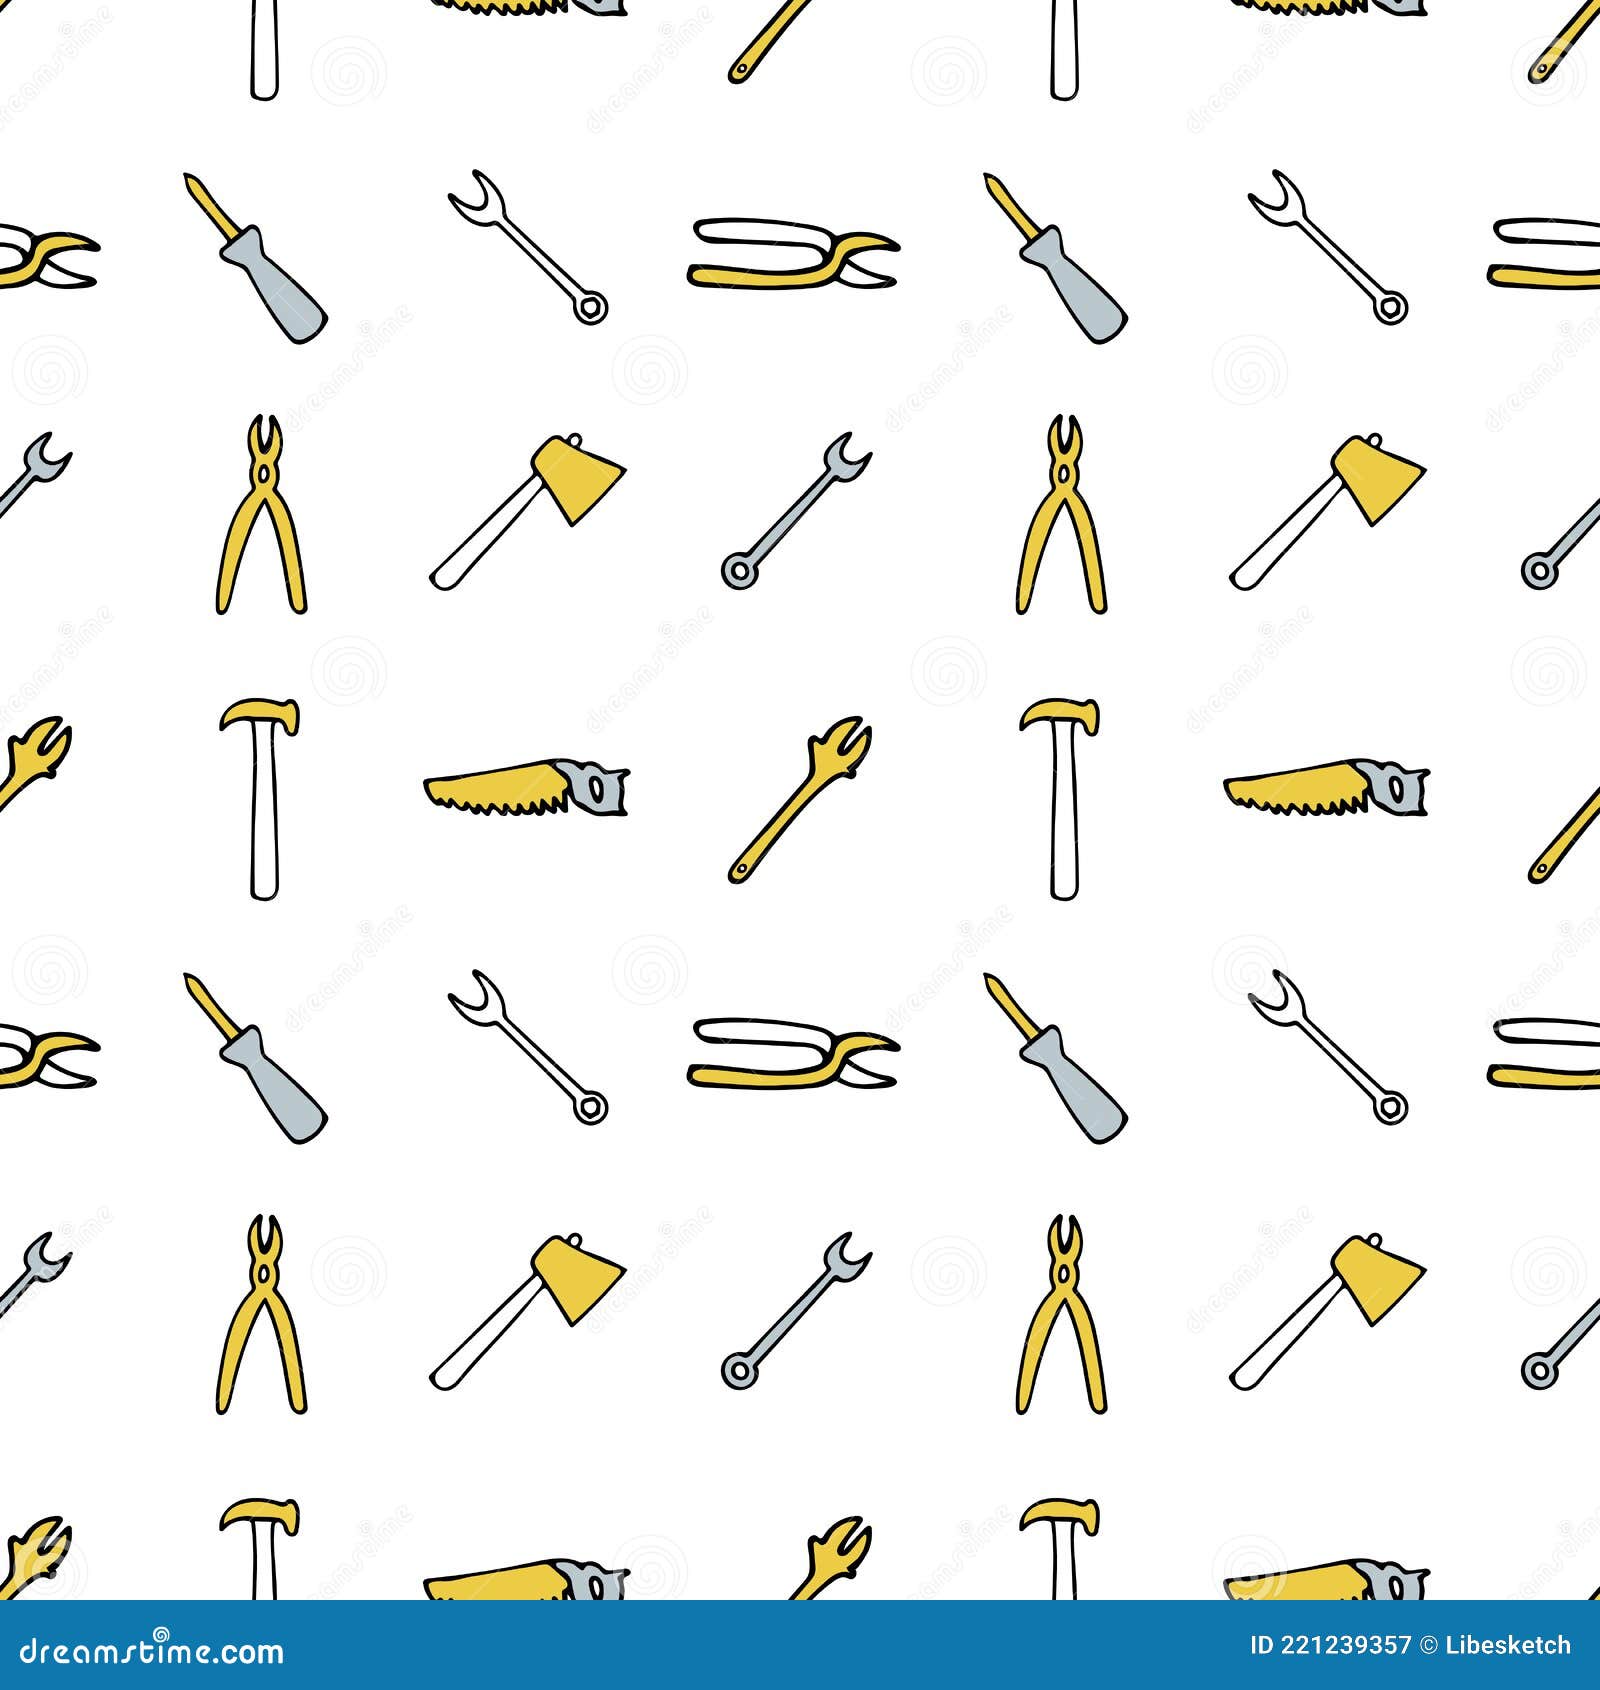 修复工具的无缝模式 螺丝刀斧钳锯锤可调扳手 向量例证 插画包括有灰色 要素 对象 凹道